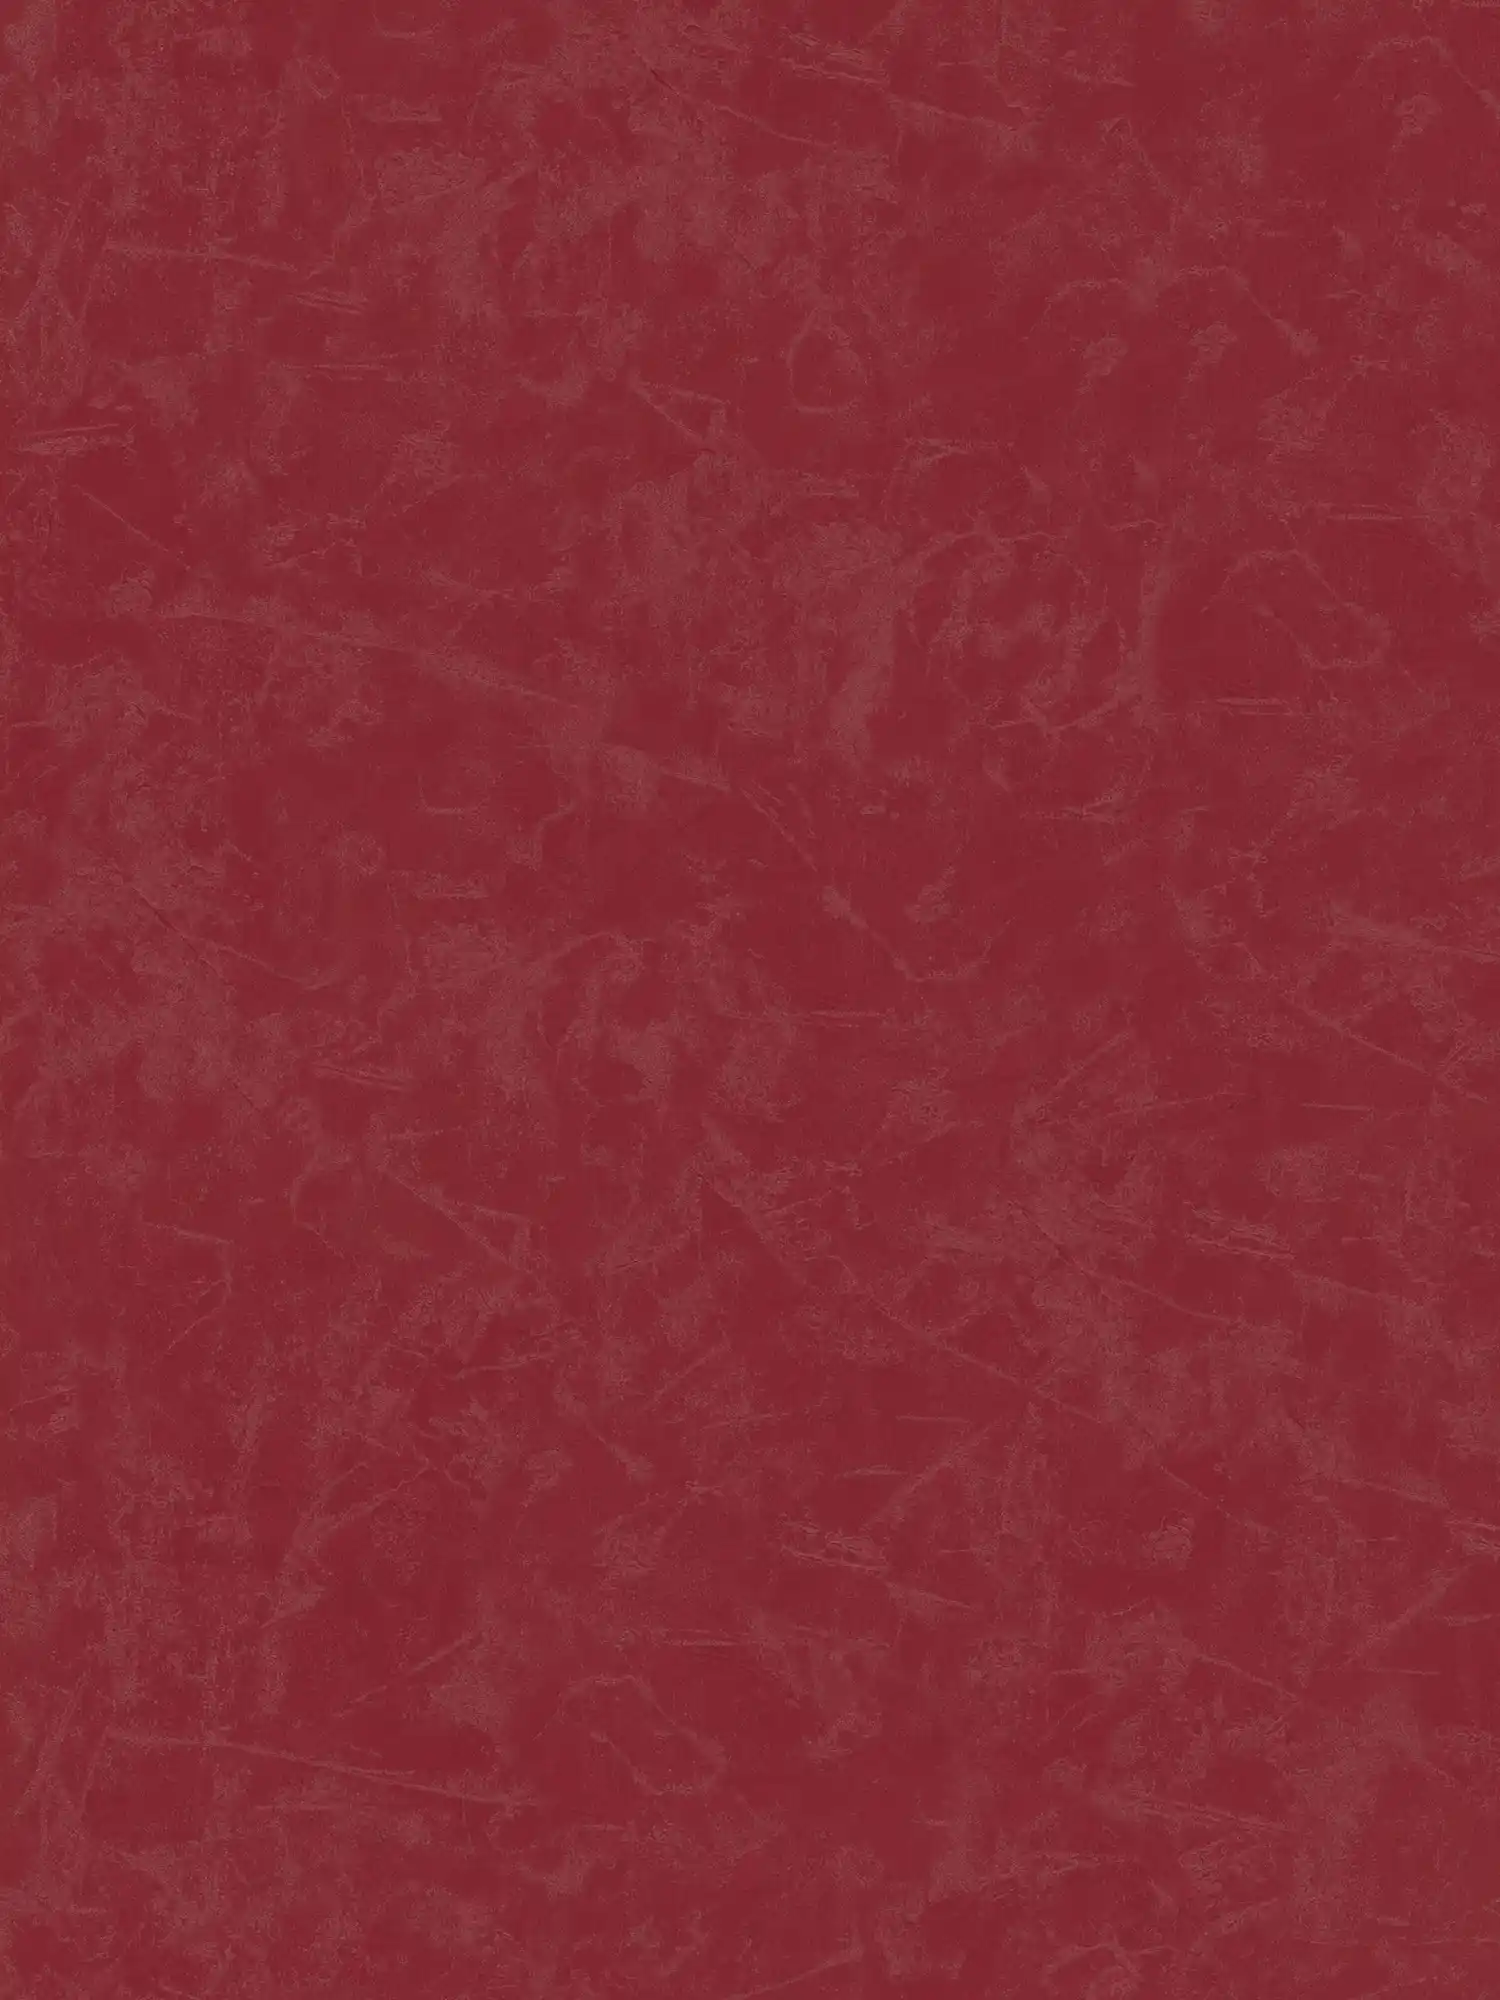 Vliesbehang plains met gipslook & structuurpatroon - rood
